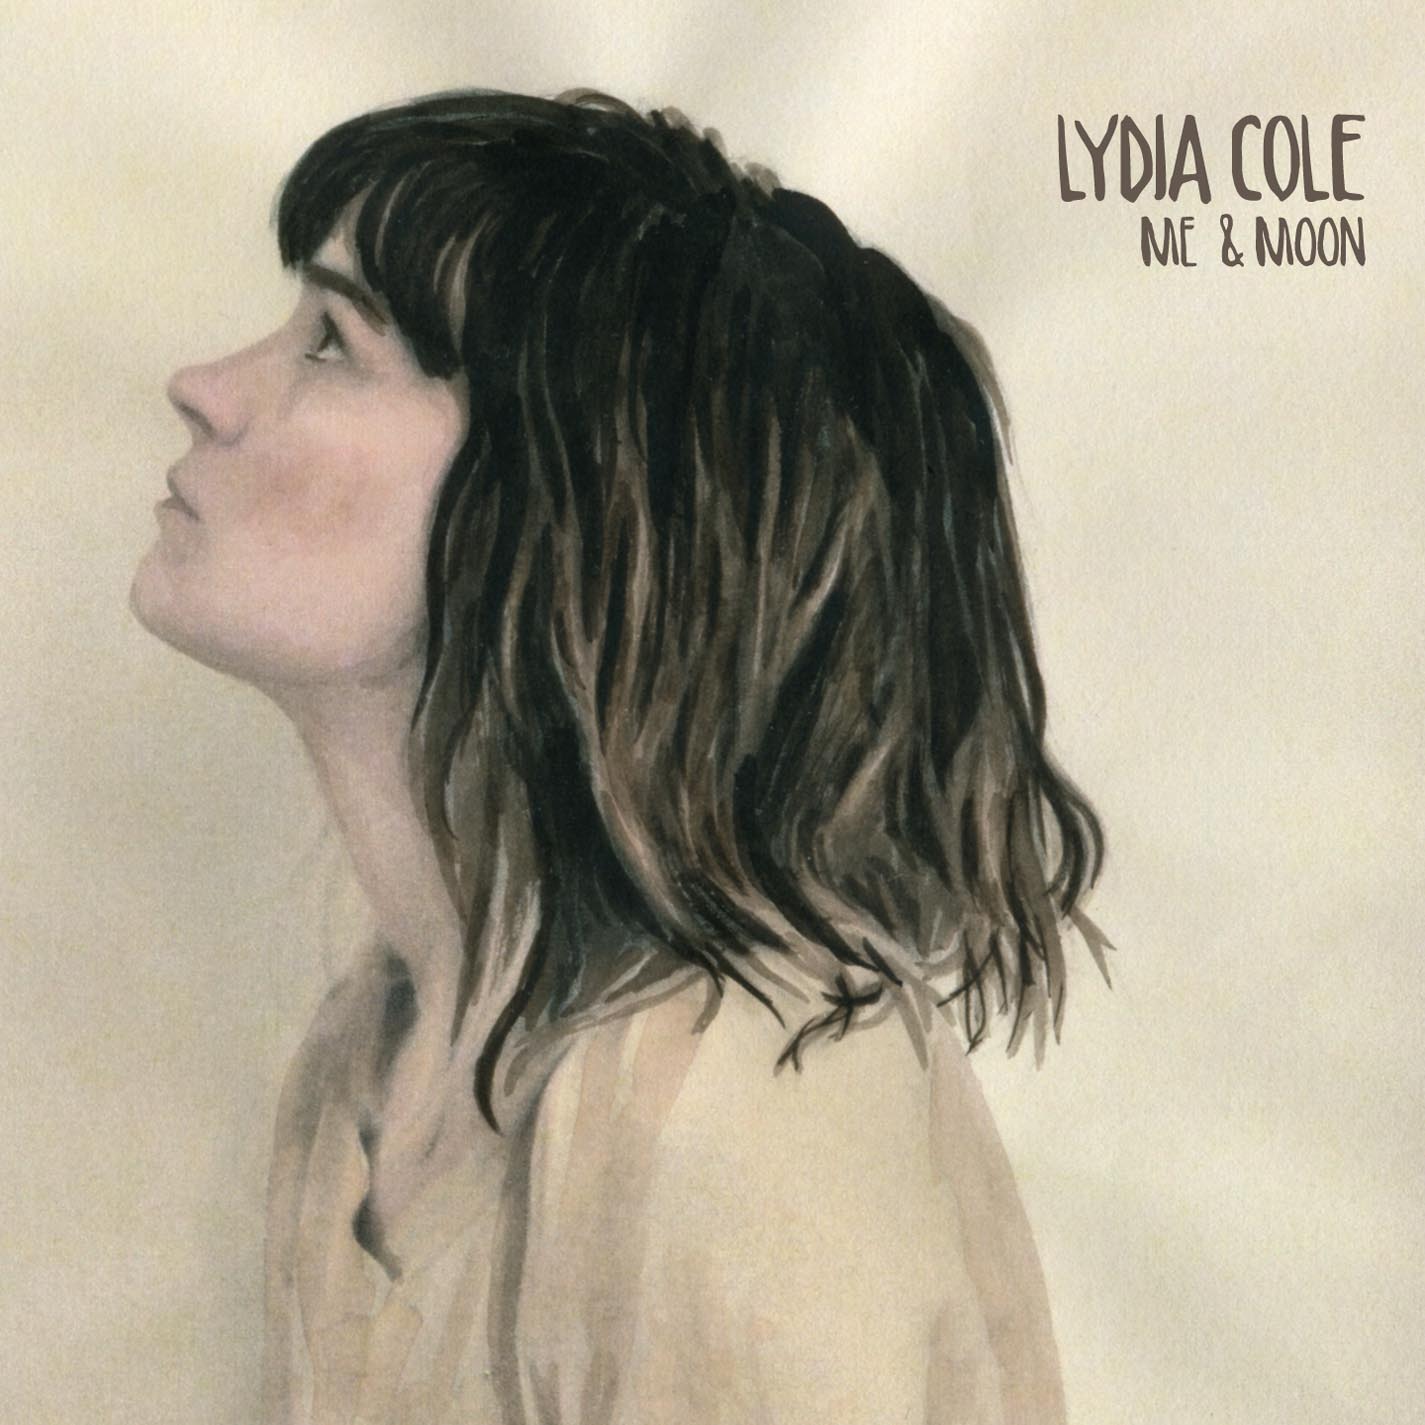 Lydia Cole